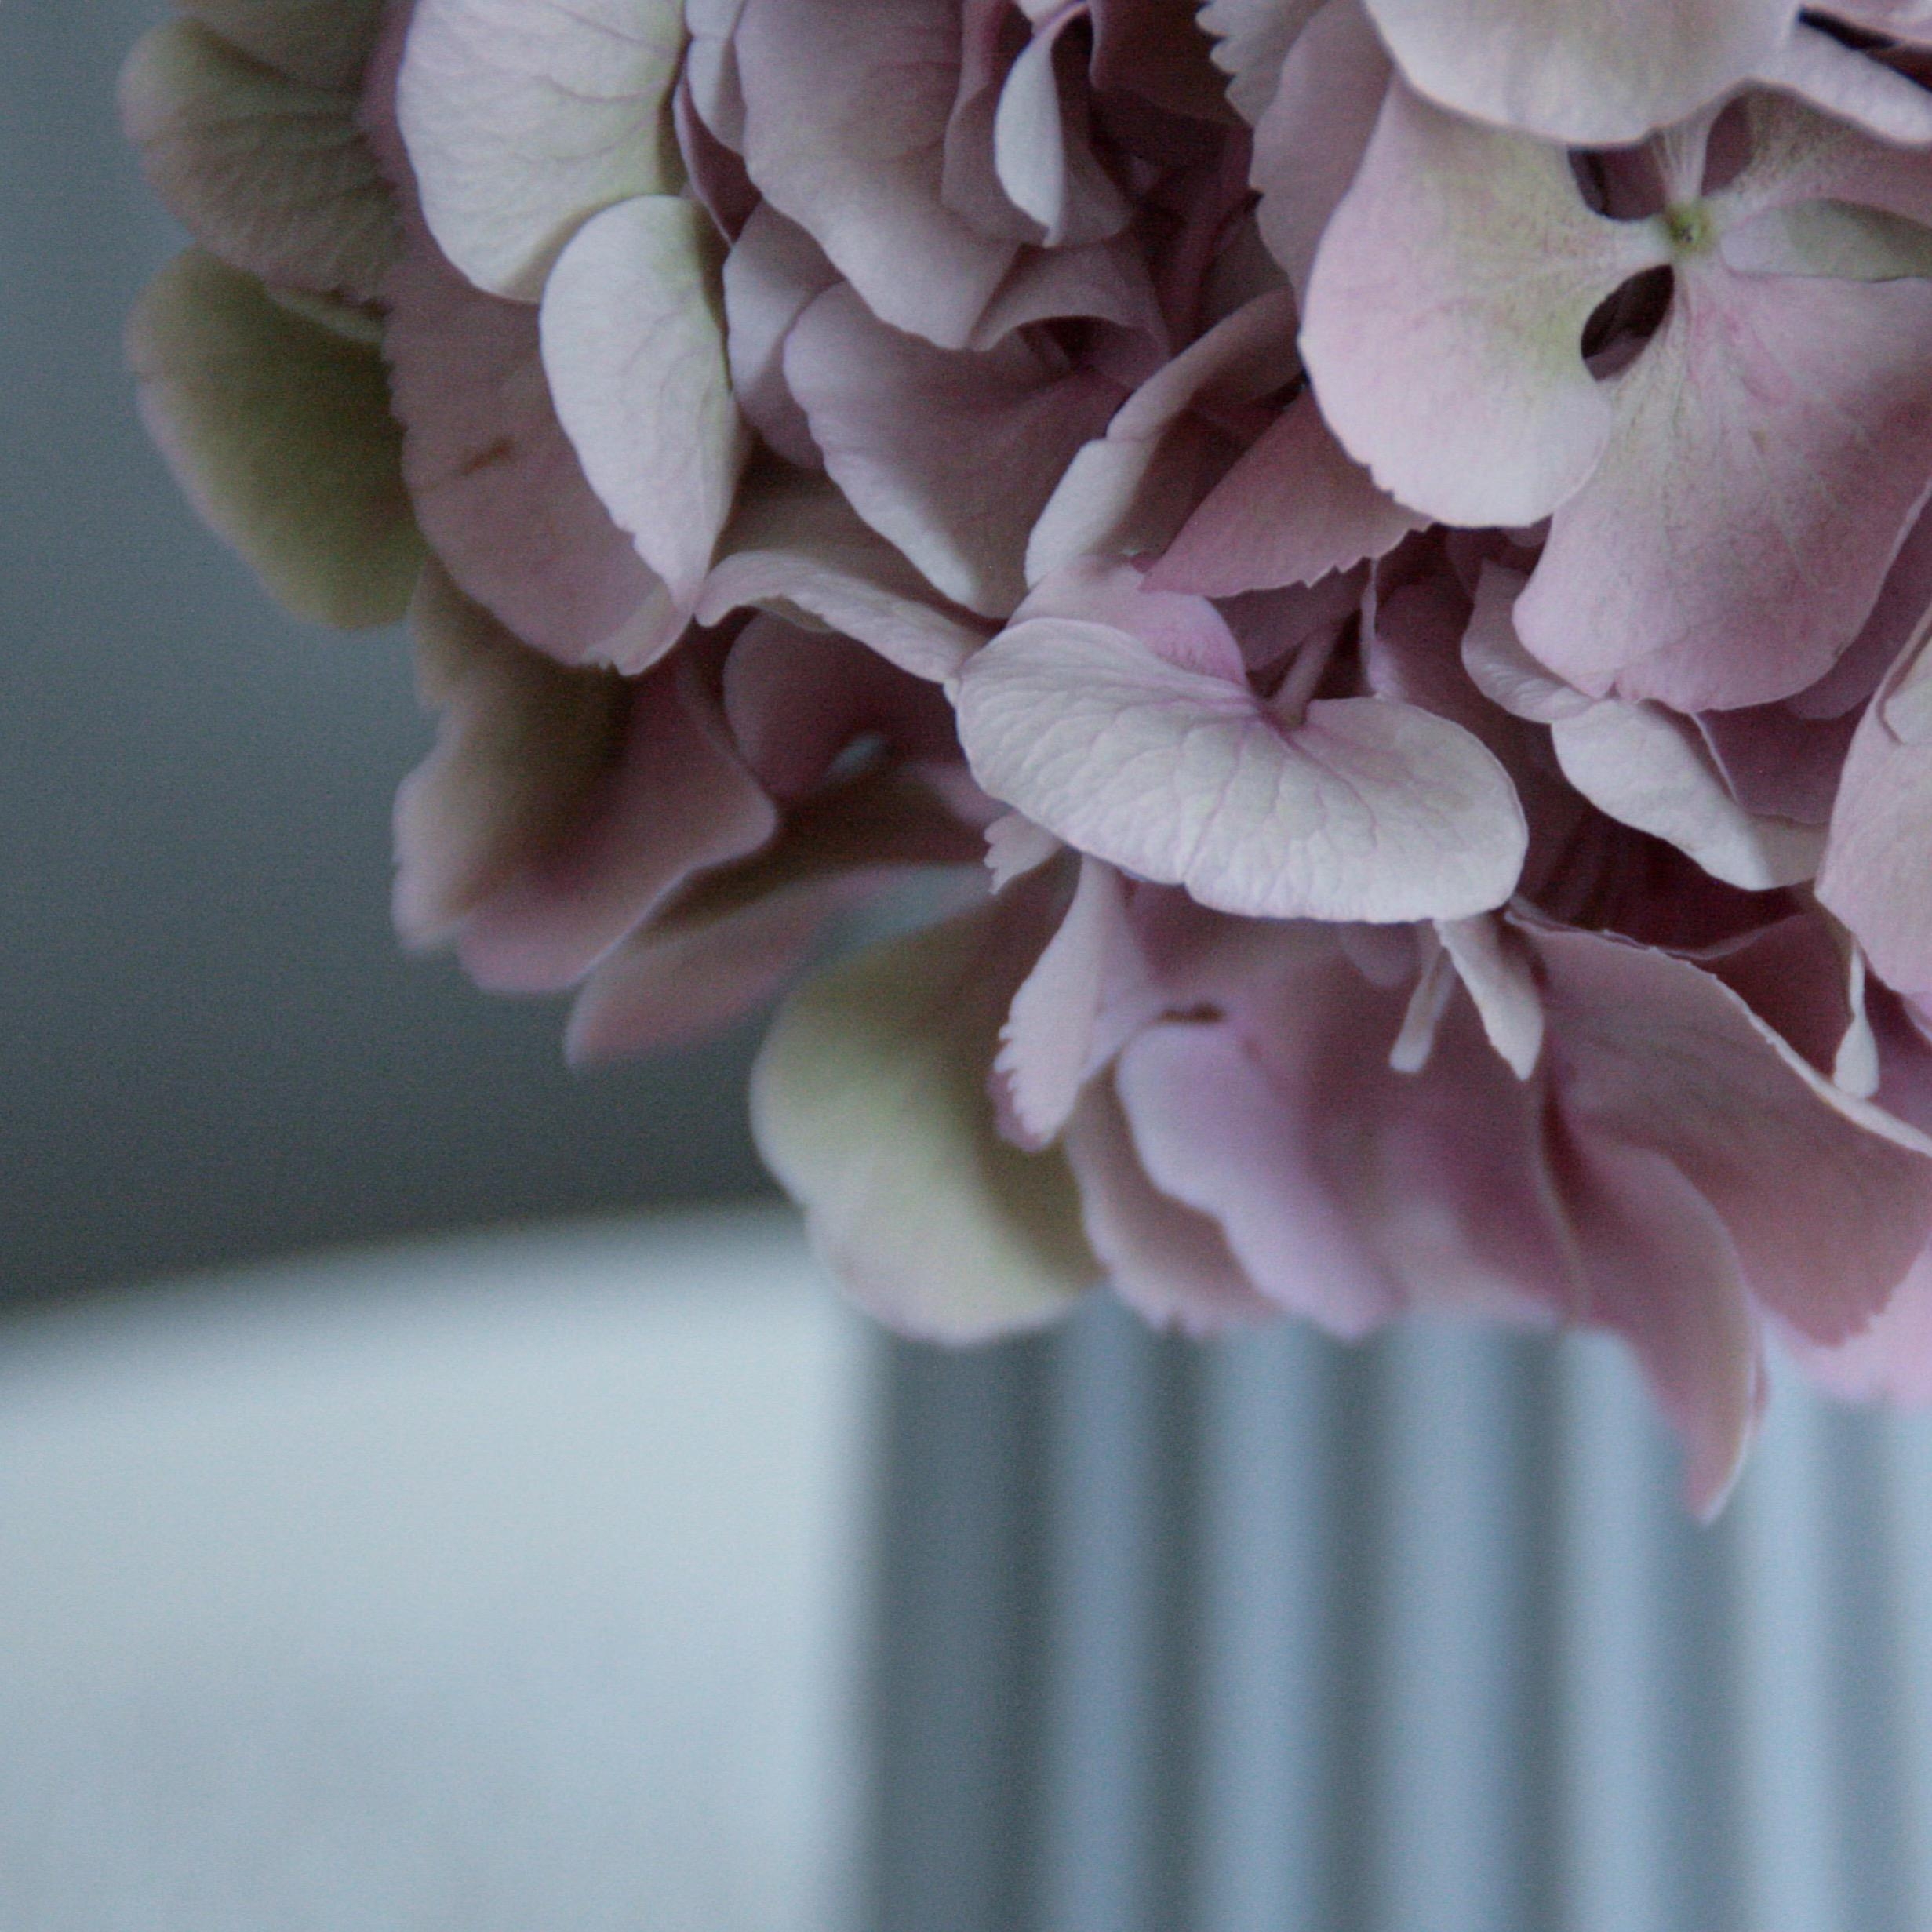 Eins meiner liebsten Blumen ist definitiv die Hortensie, die durch ihre Eleganz punktet. #hortensienwoche